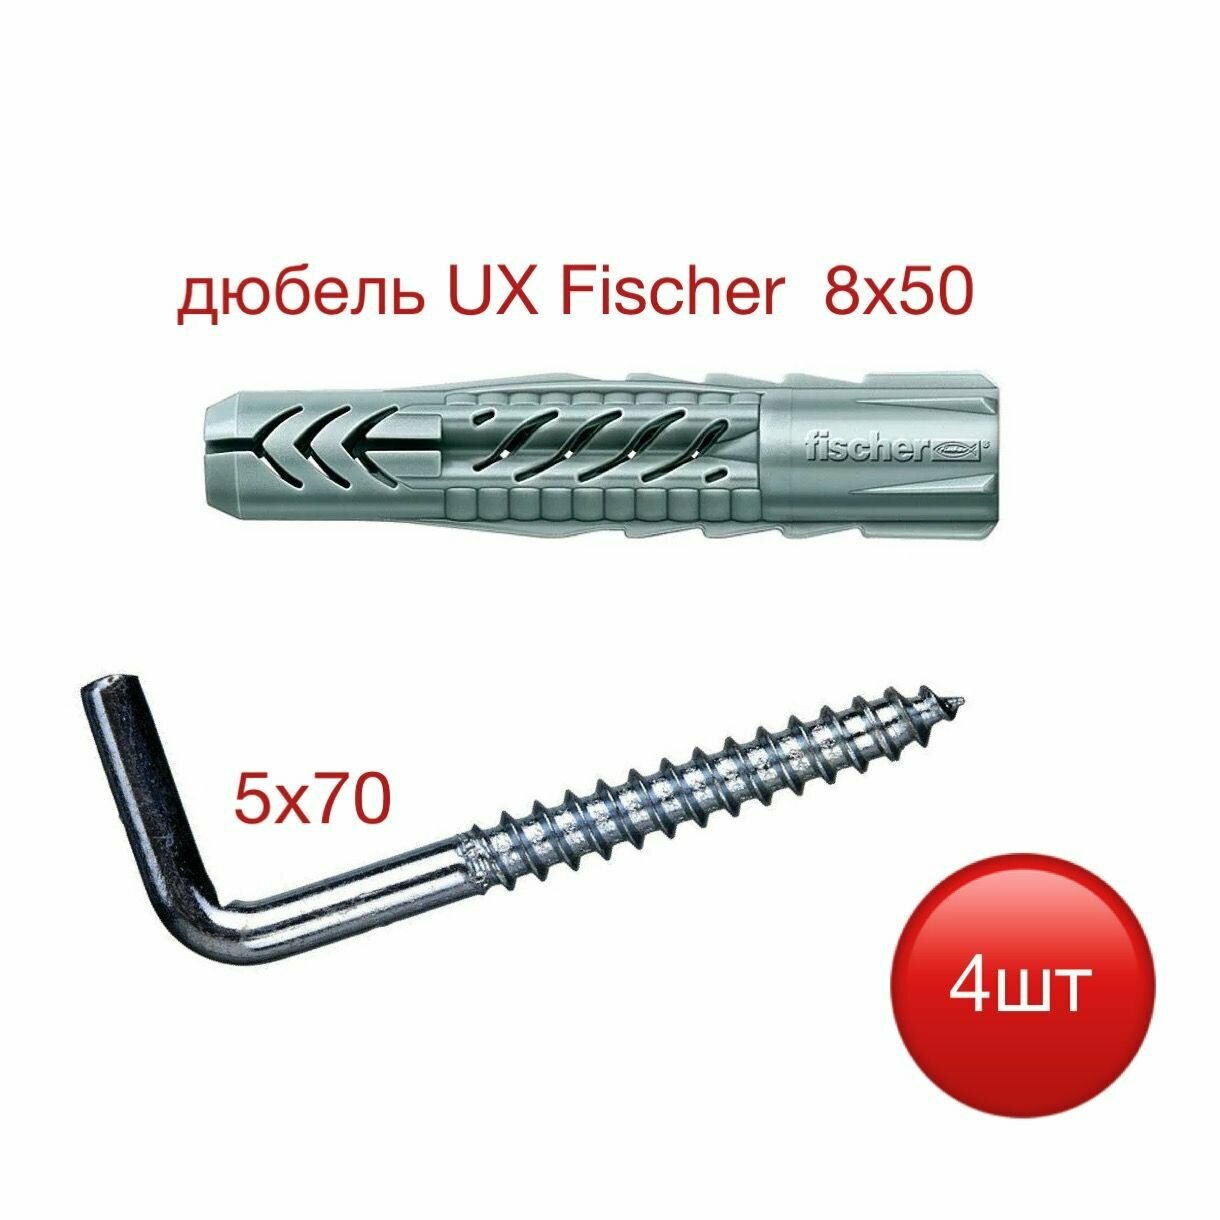 Дюбель UX 8х50 Fischer с шурупом-костылем 5х70